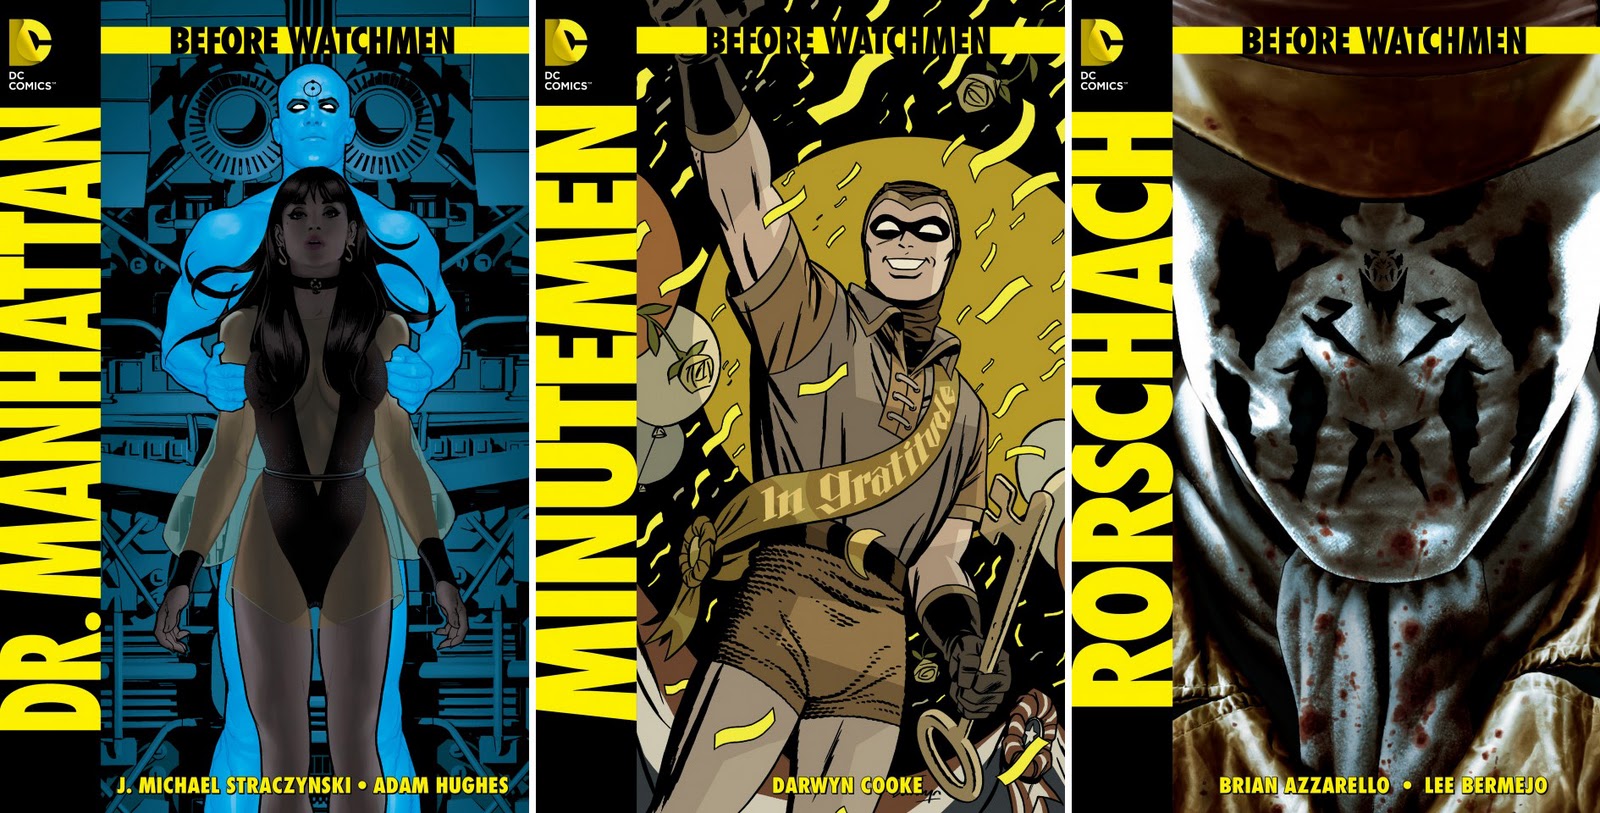 DC Names New Watchmen Comics.